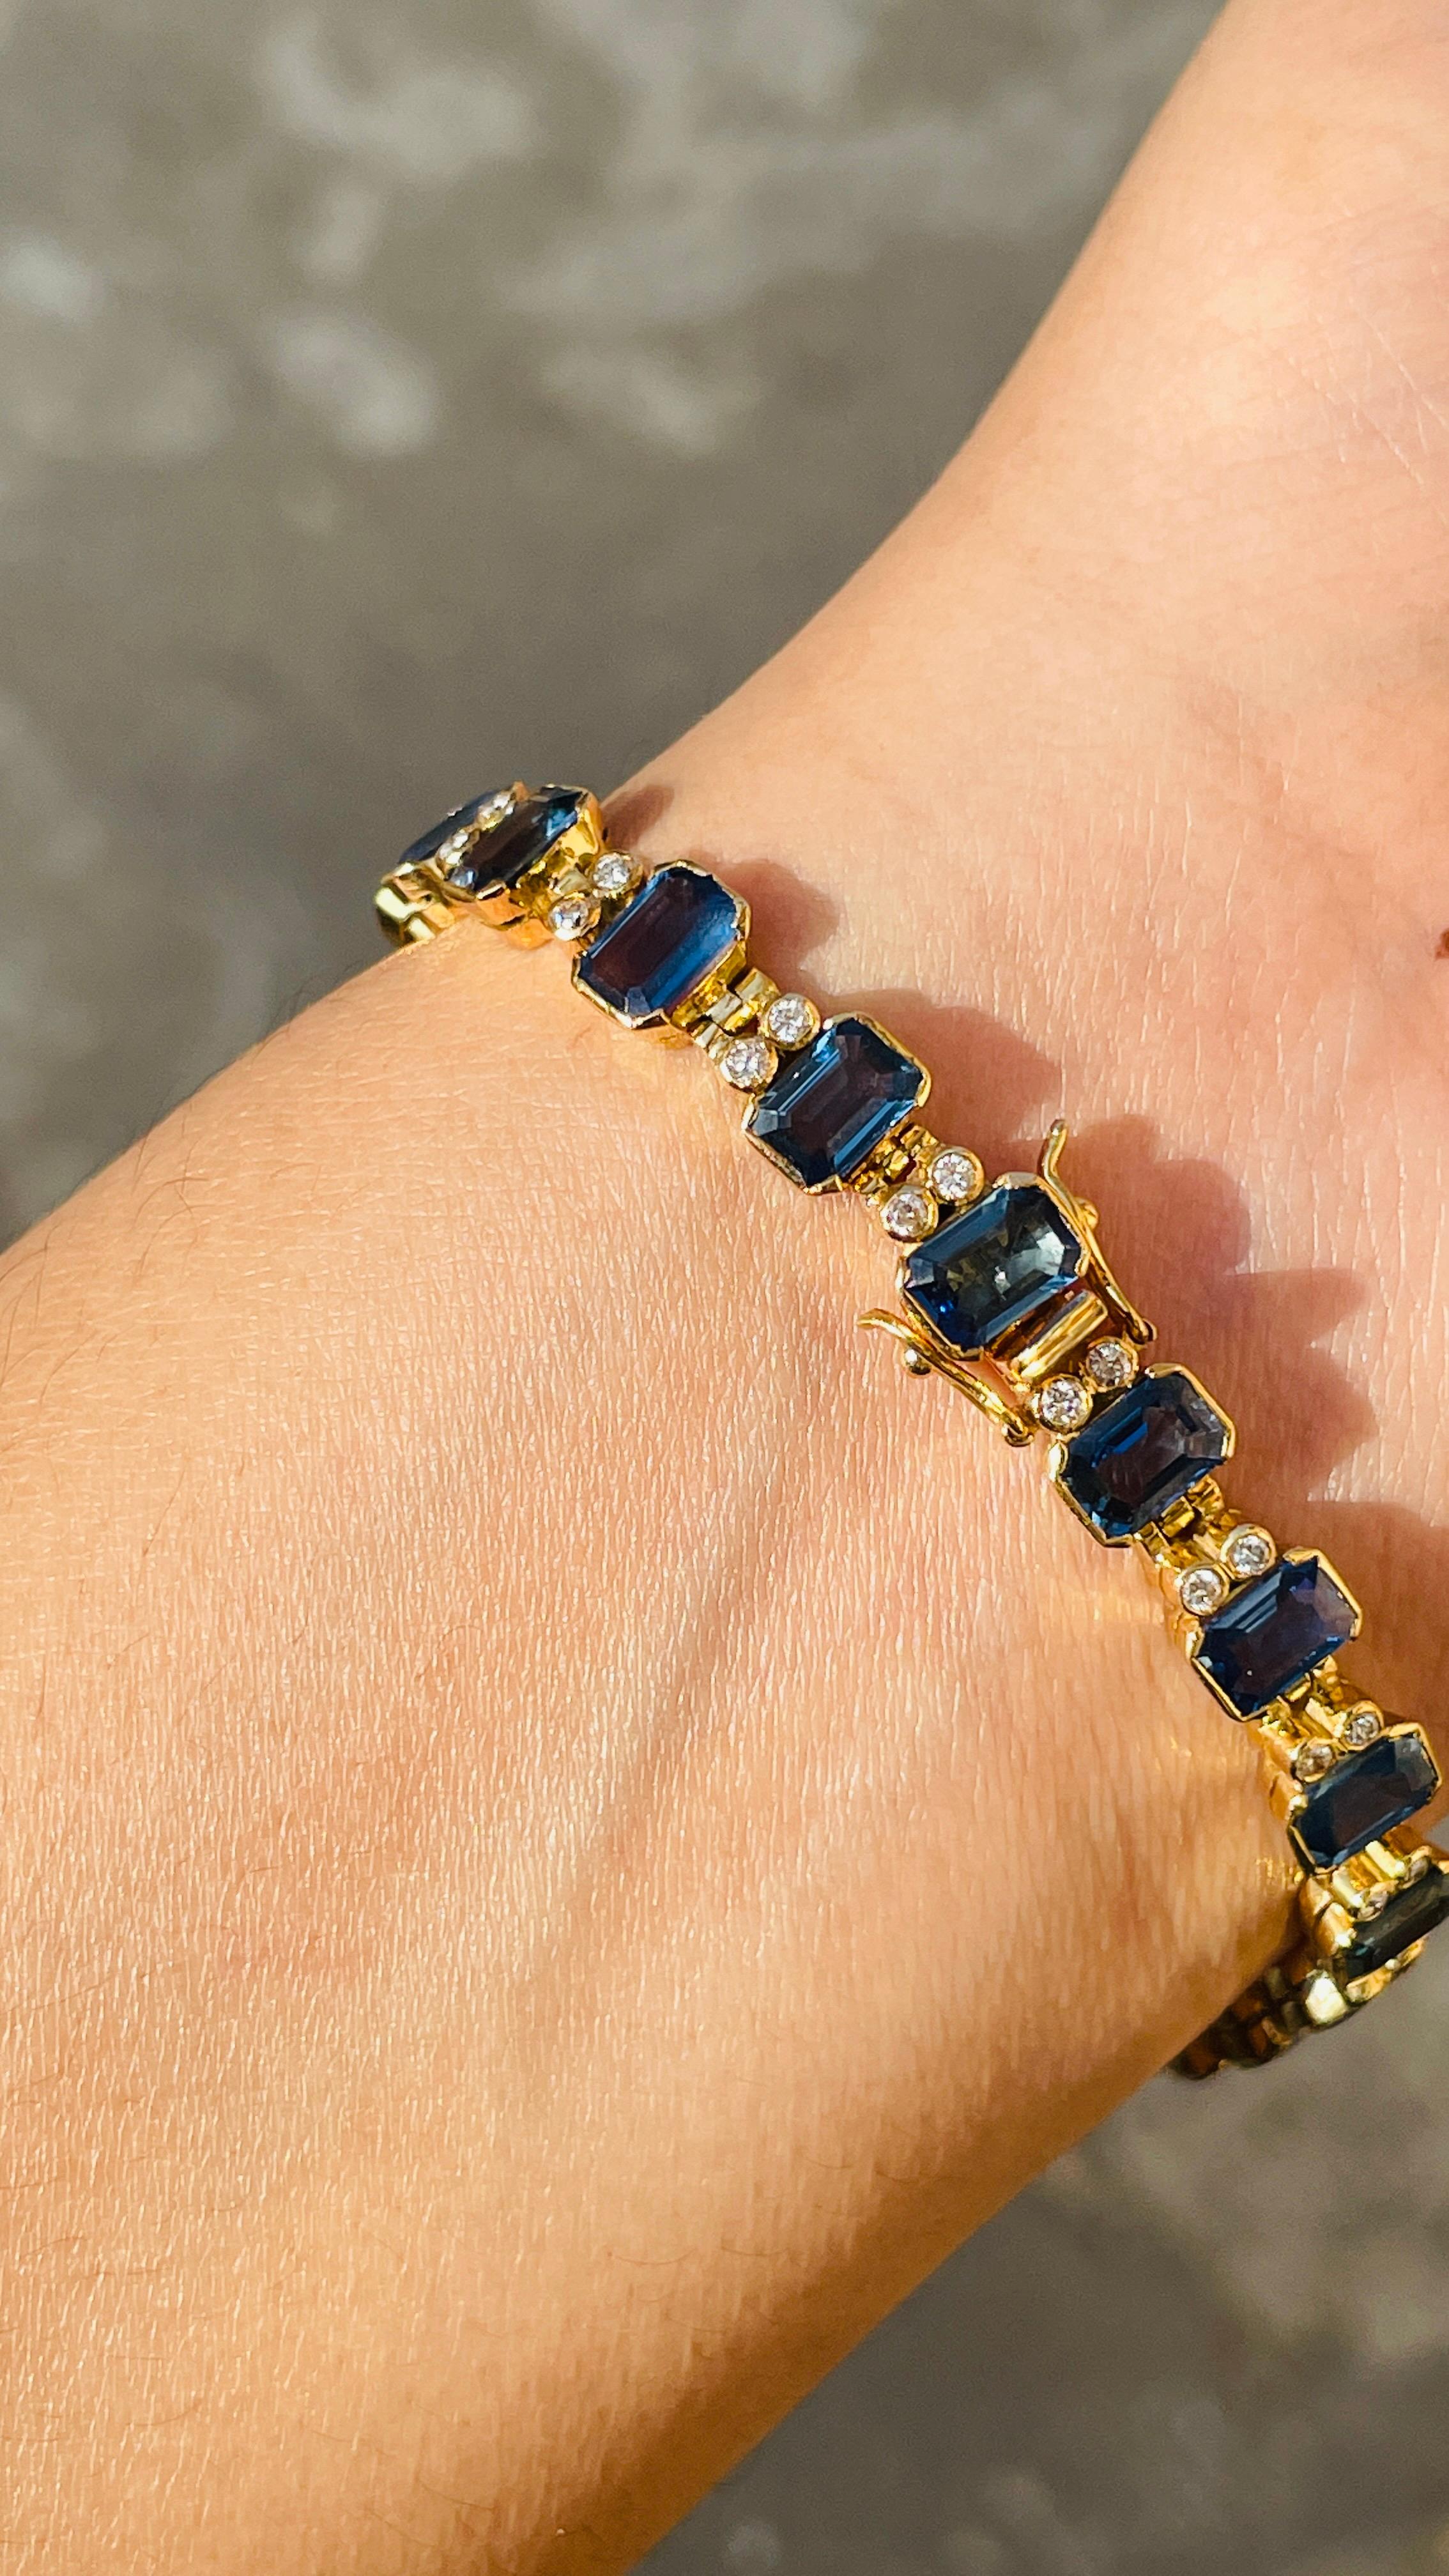 Bracelet en saphir bleu en or 18K. Il est doté d'une pierre précieuse de taille octogonale parfaite pour vous faire remarquer en toute occasion ou lors d'un événement.
Un bracelet de tennis est un bijou essentiel pour le jour de votre mariage. Le